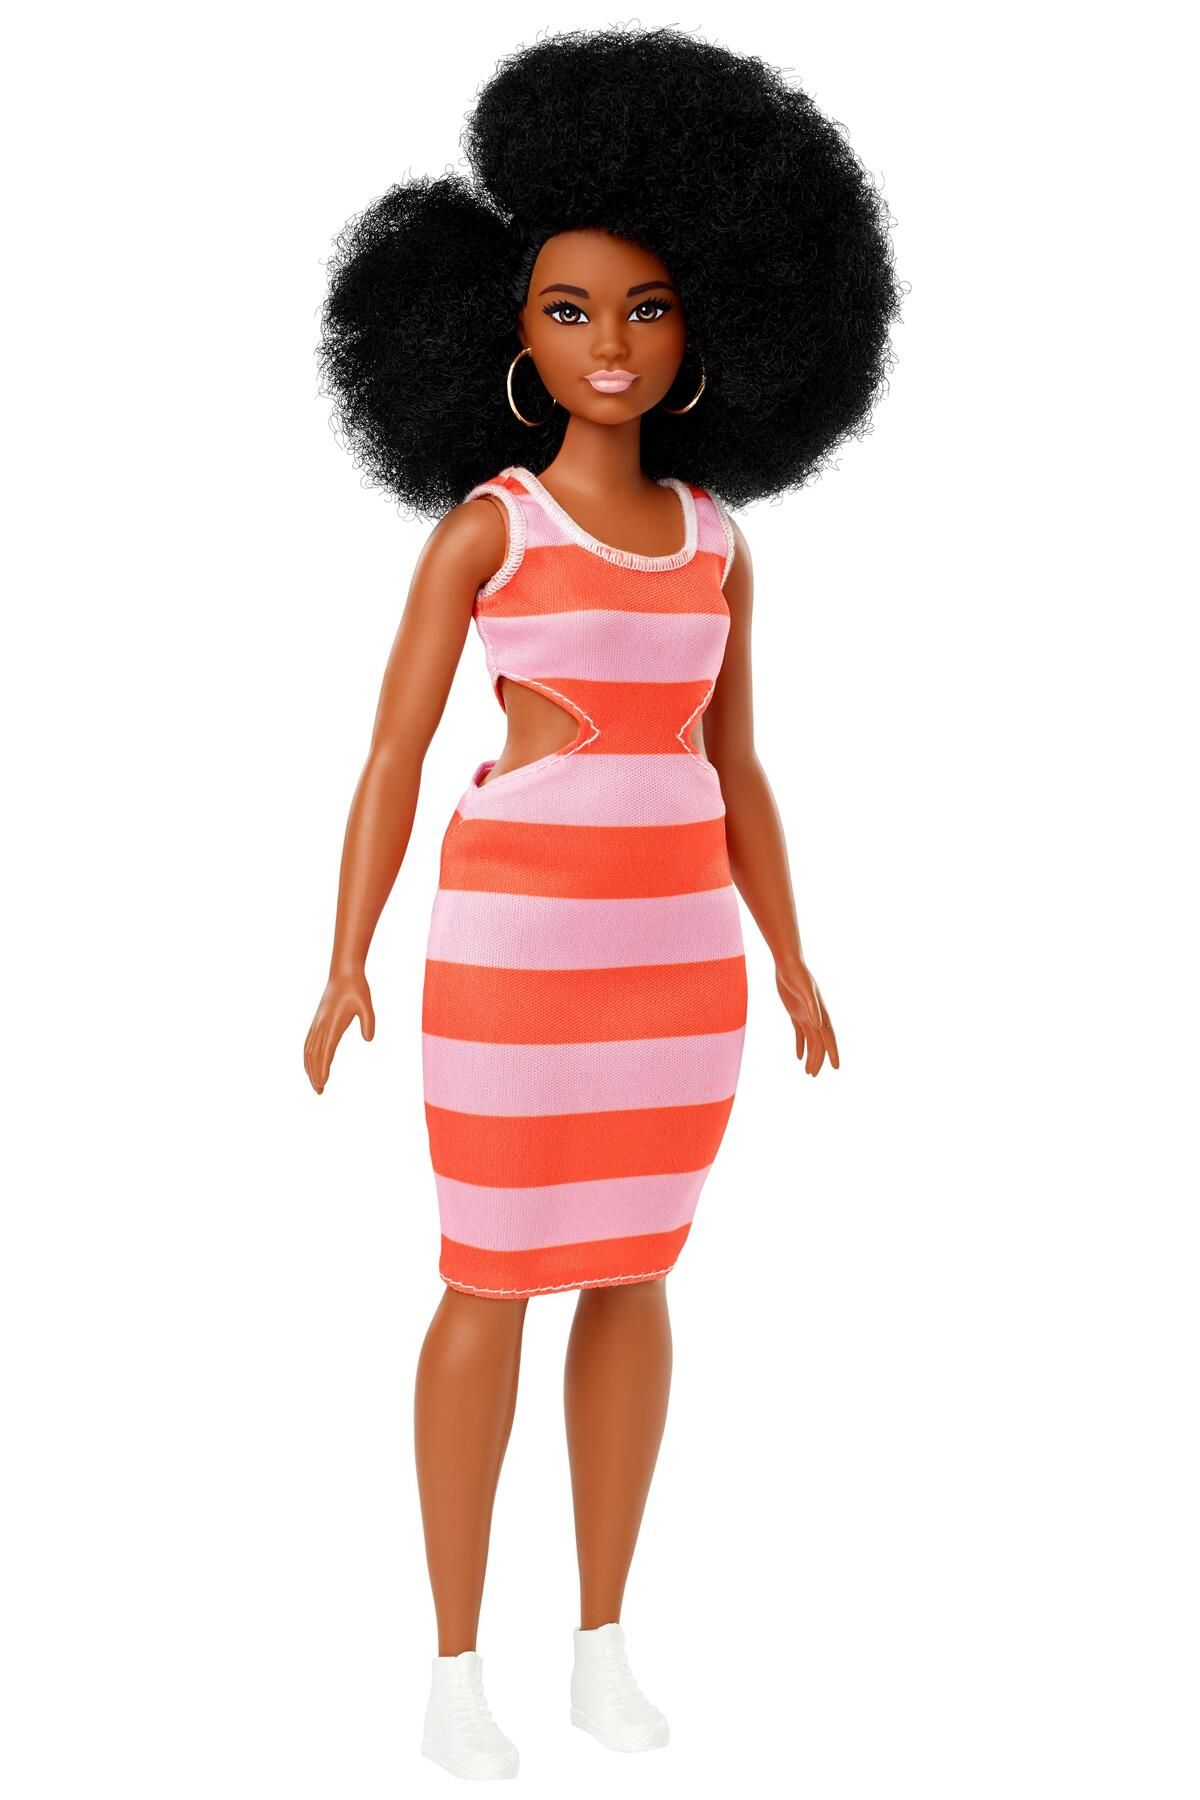 Barbie Fashionistas Bebek ve Aksesuarları Yuvarlak Hatlı, Kabarık Kıvırcık Saçlı  FXL45-FBR37